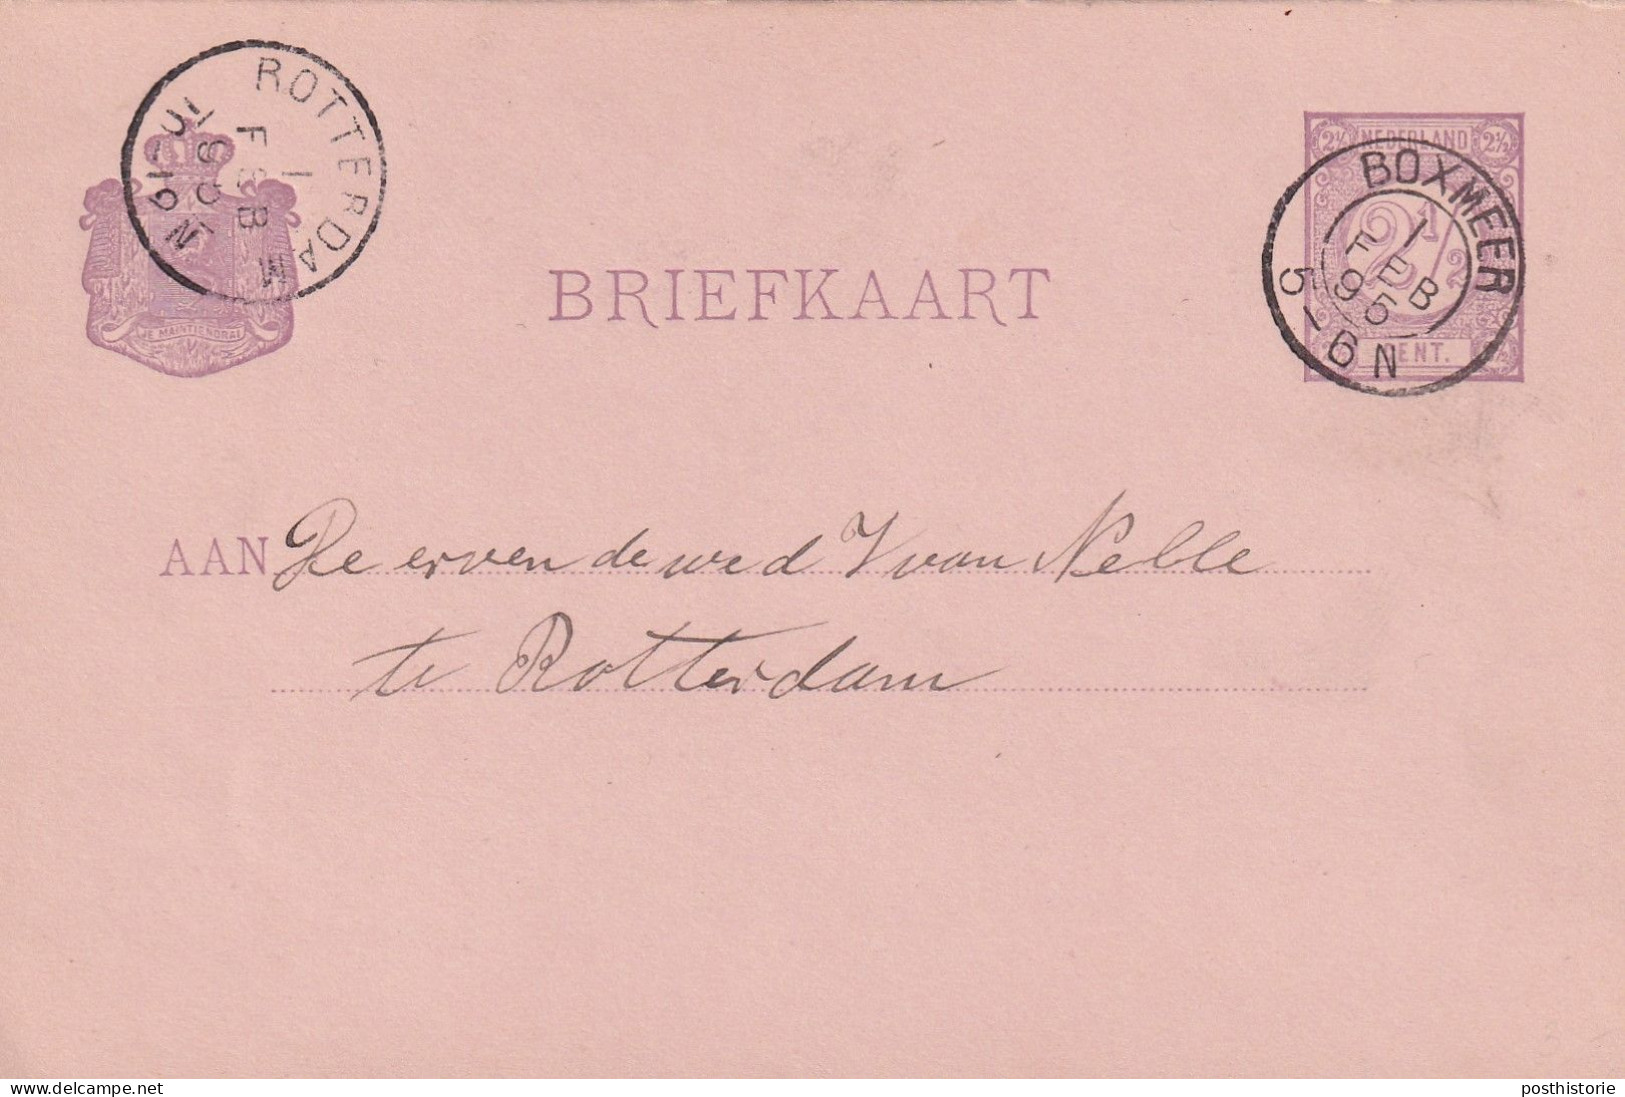 Briefkaart 1 Feb 1895 Boxmeer (postkantoor Kleinrond) Naar Rotterdam - Marcophilie